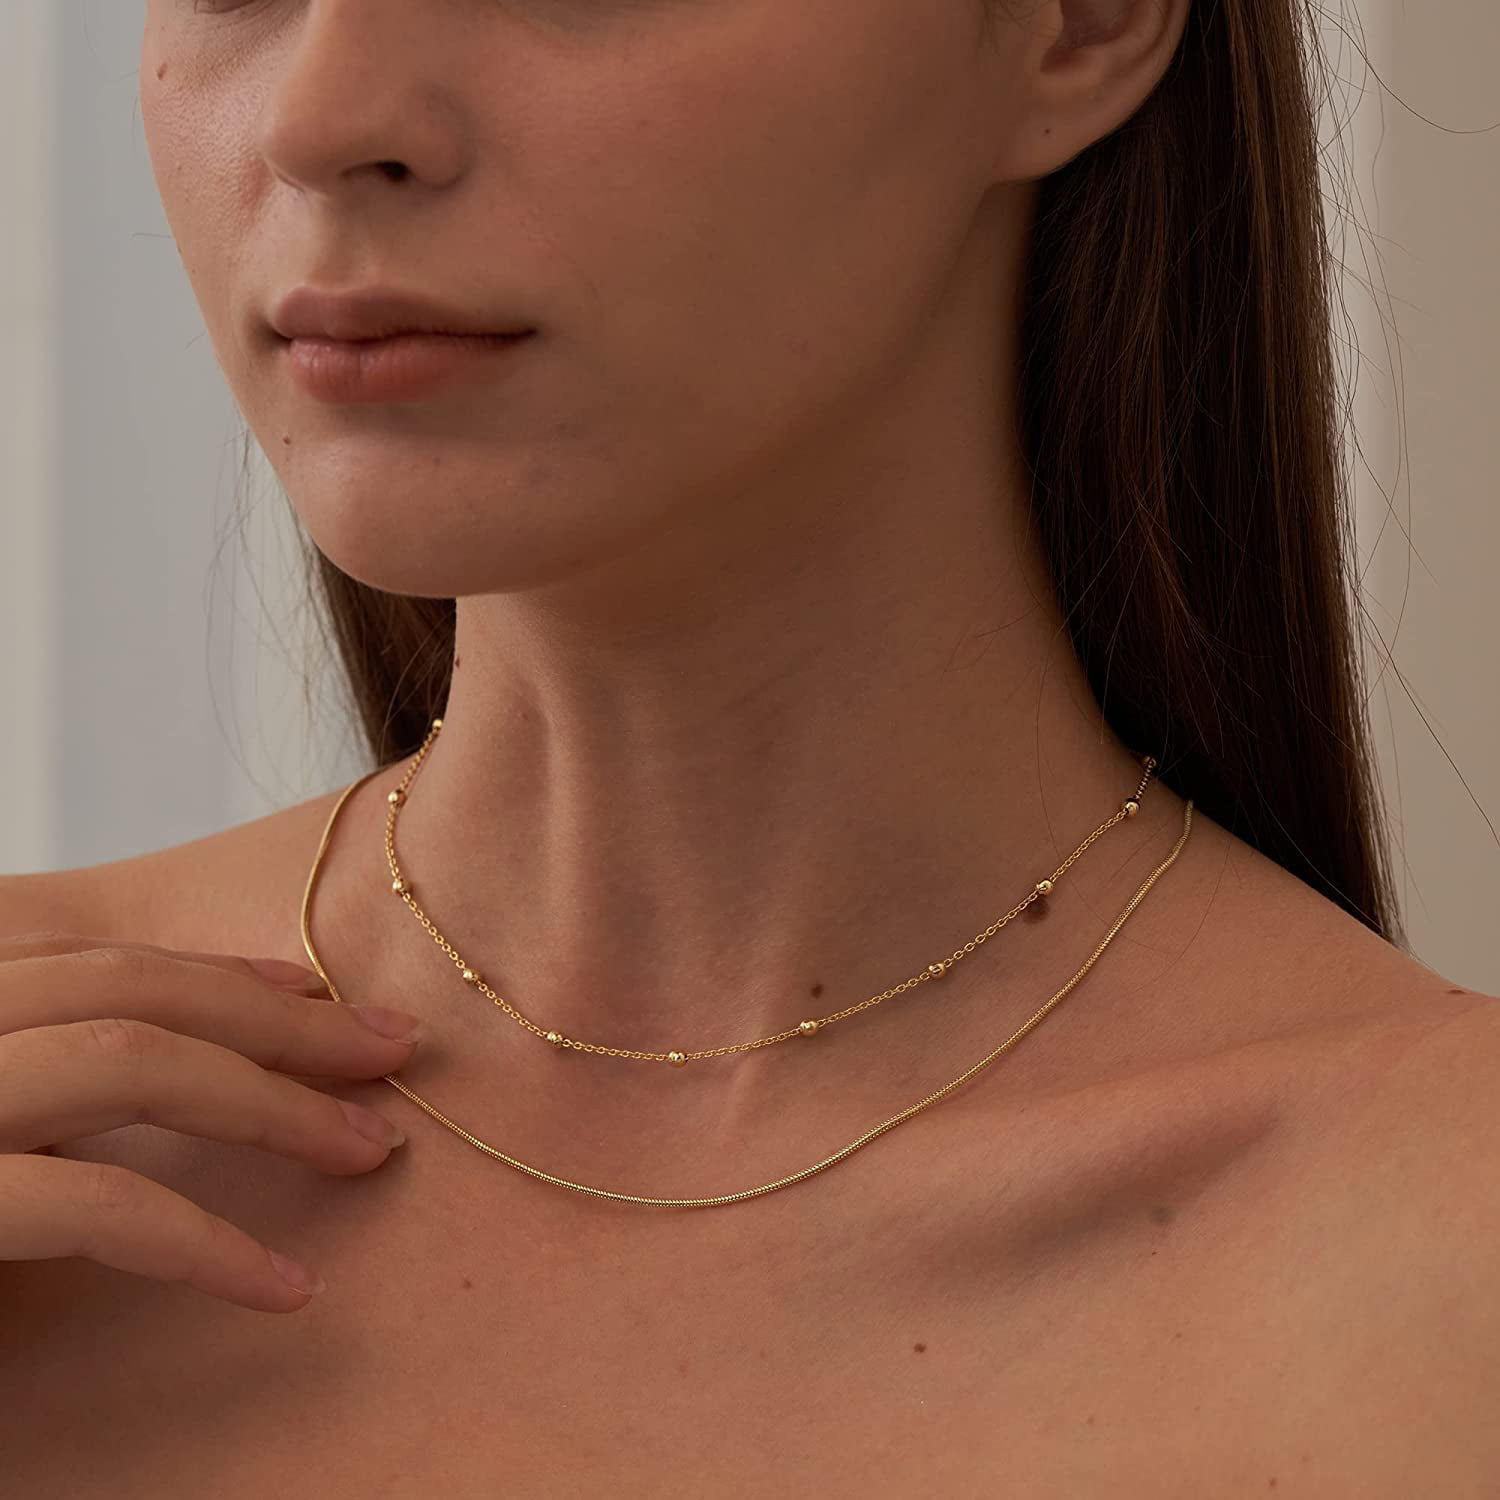 Fashion Dainty Double Chain Choker Necklace Delicate Choker Gifts for Women  Girl | Wish